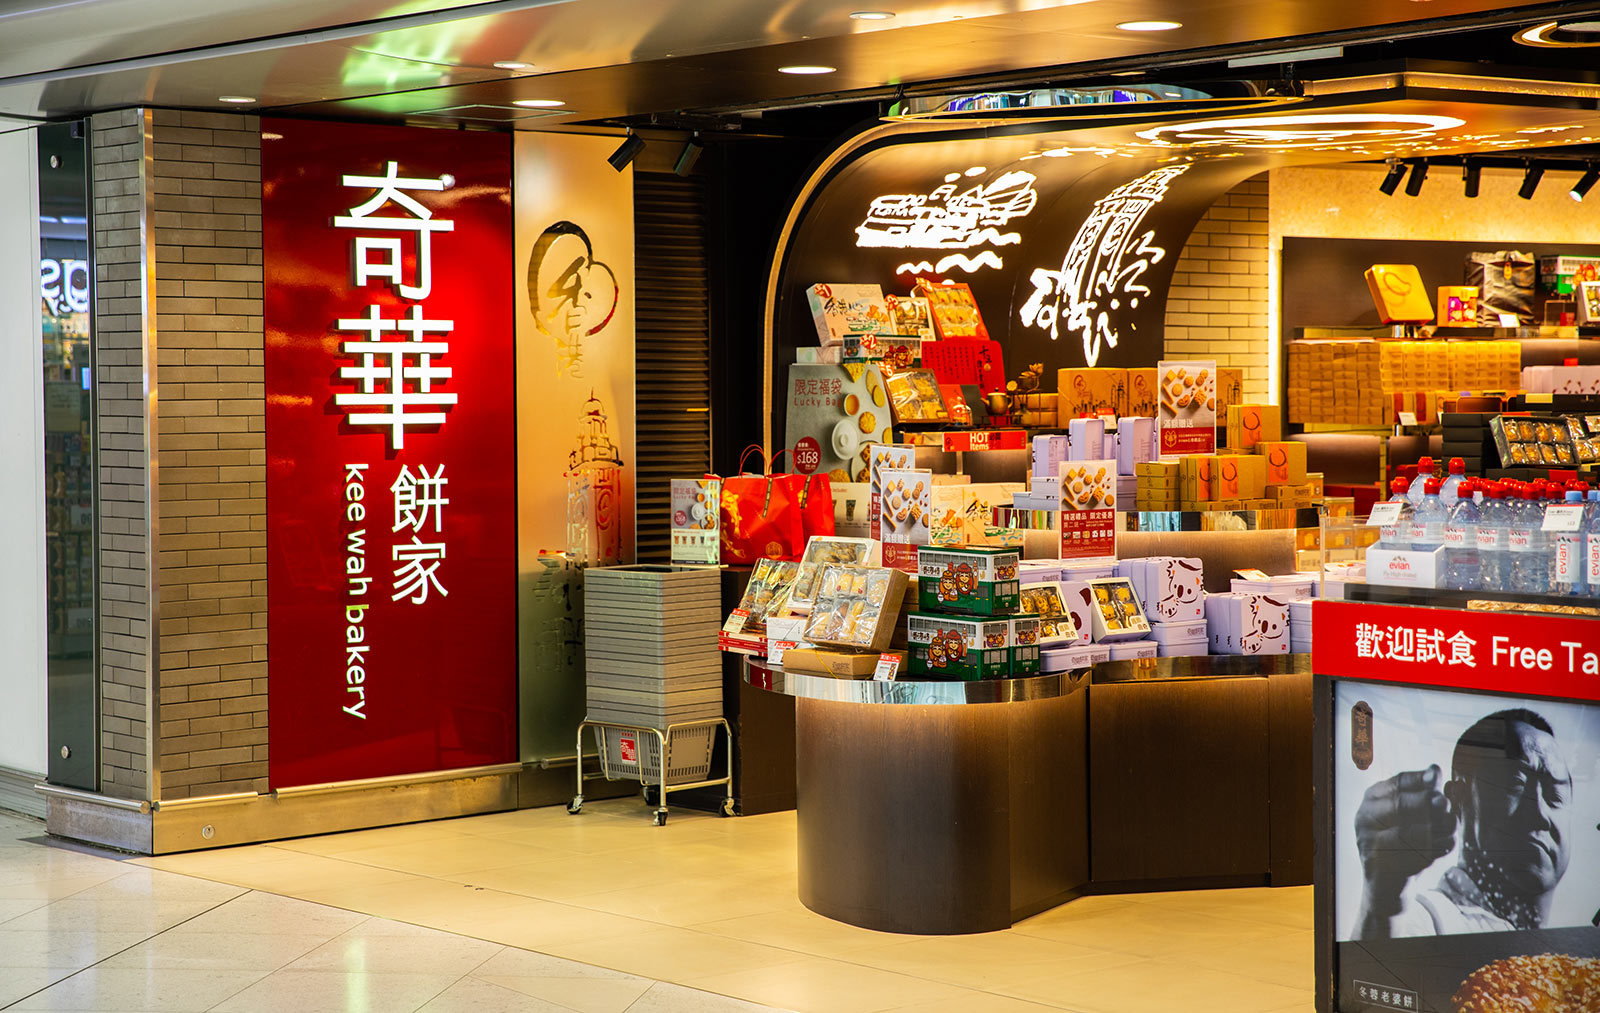 Kee Wah Bakery Hong Kong International Airport